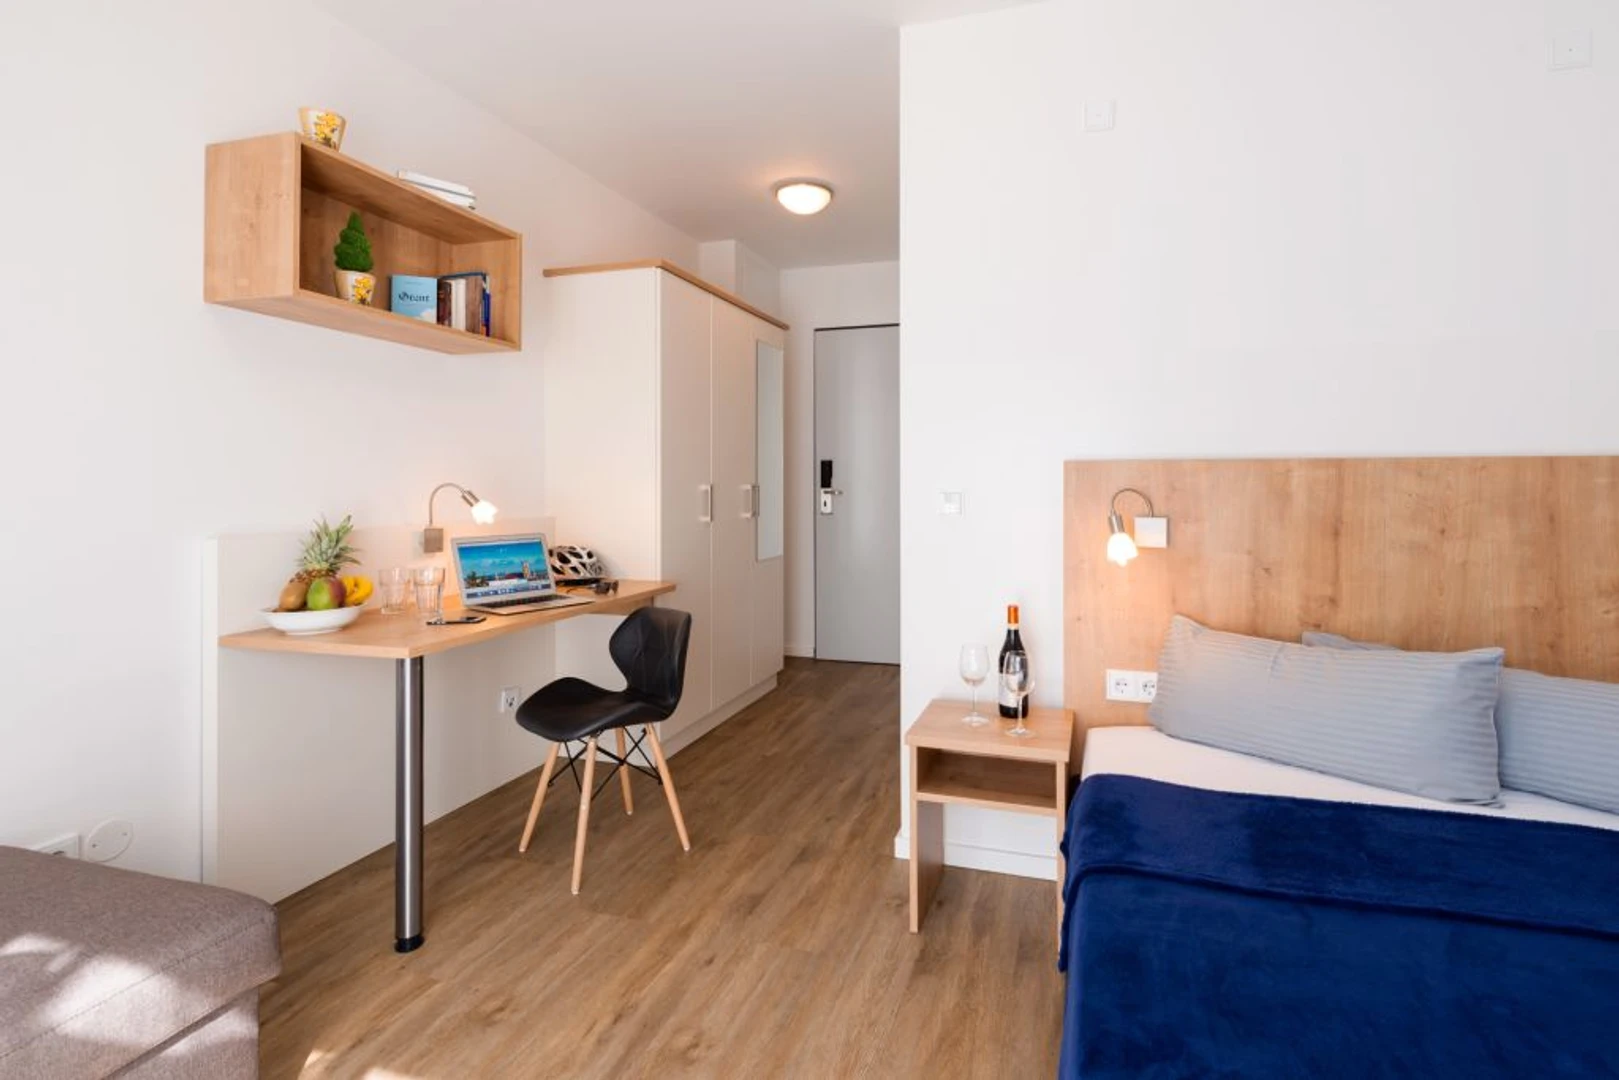 Alquiler de habitación en piso compartido en Munich